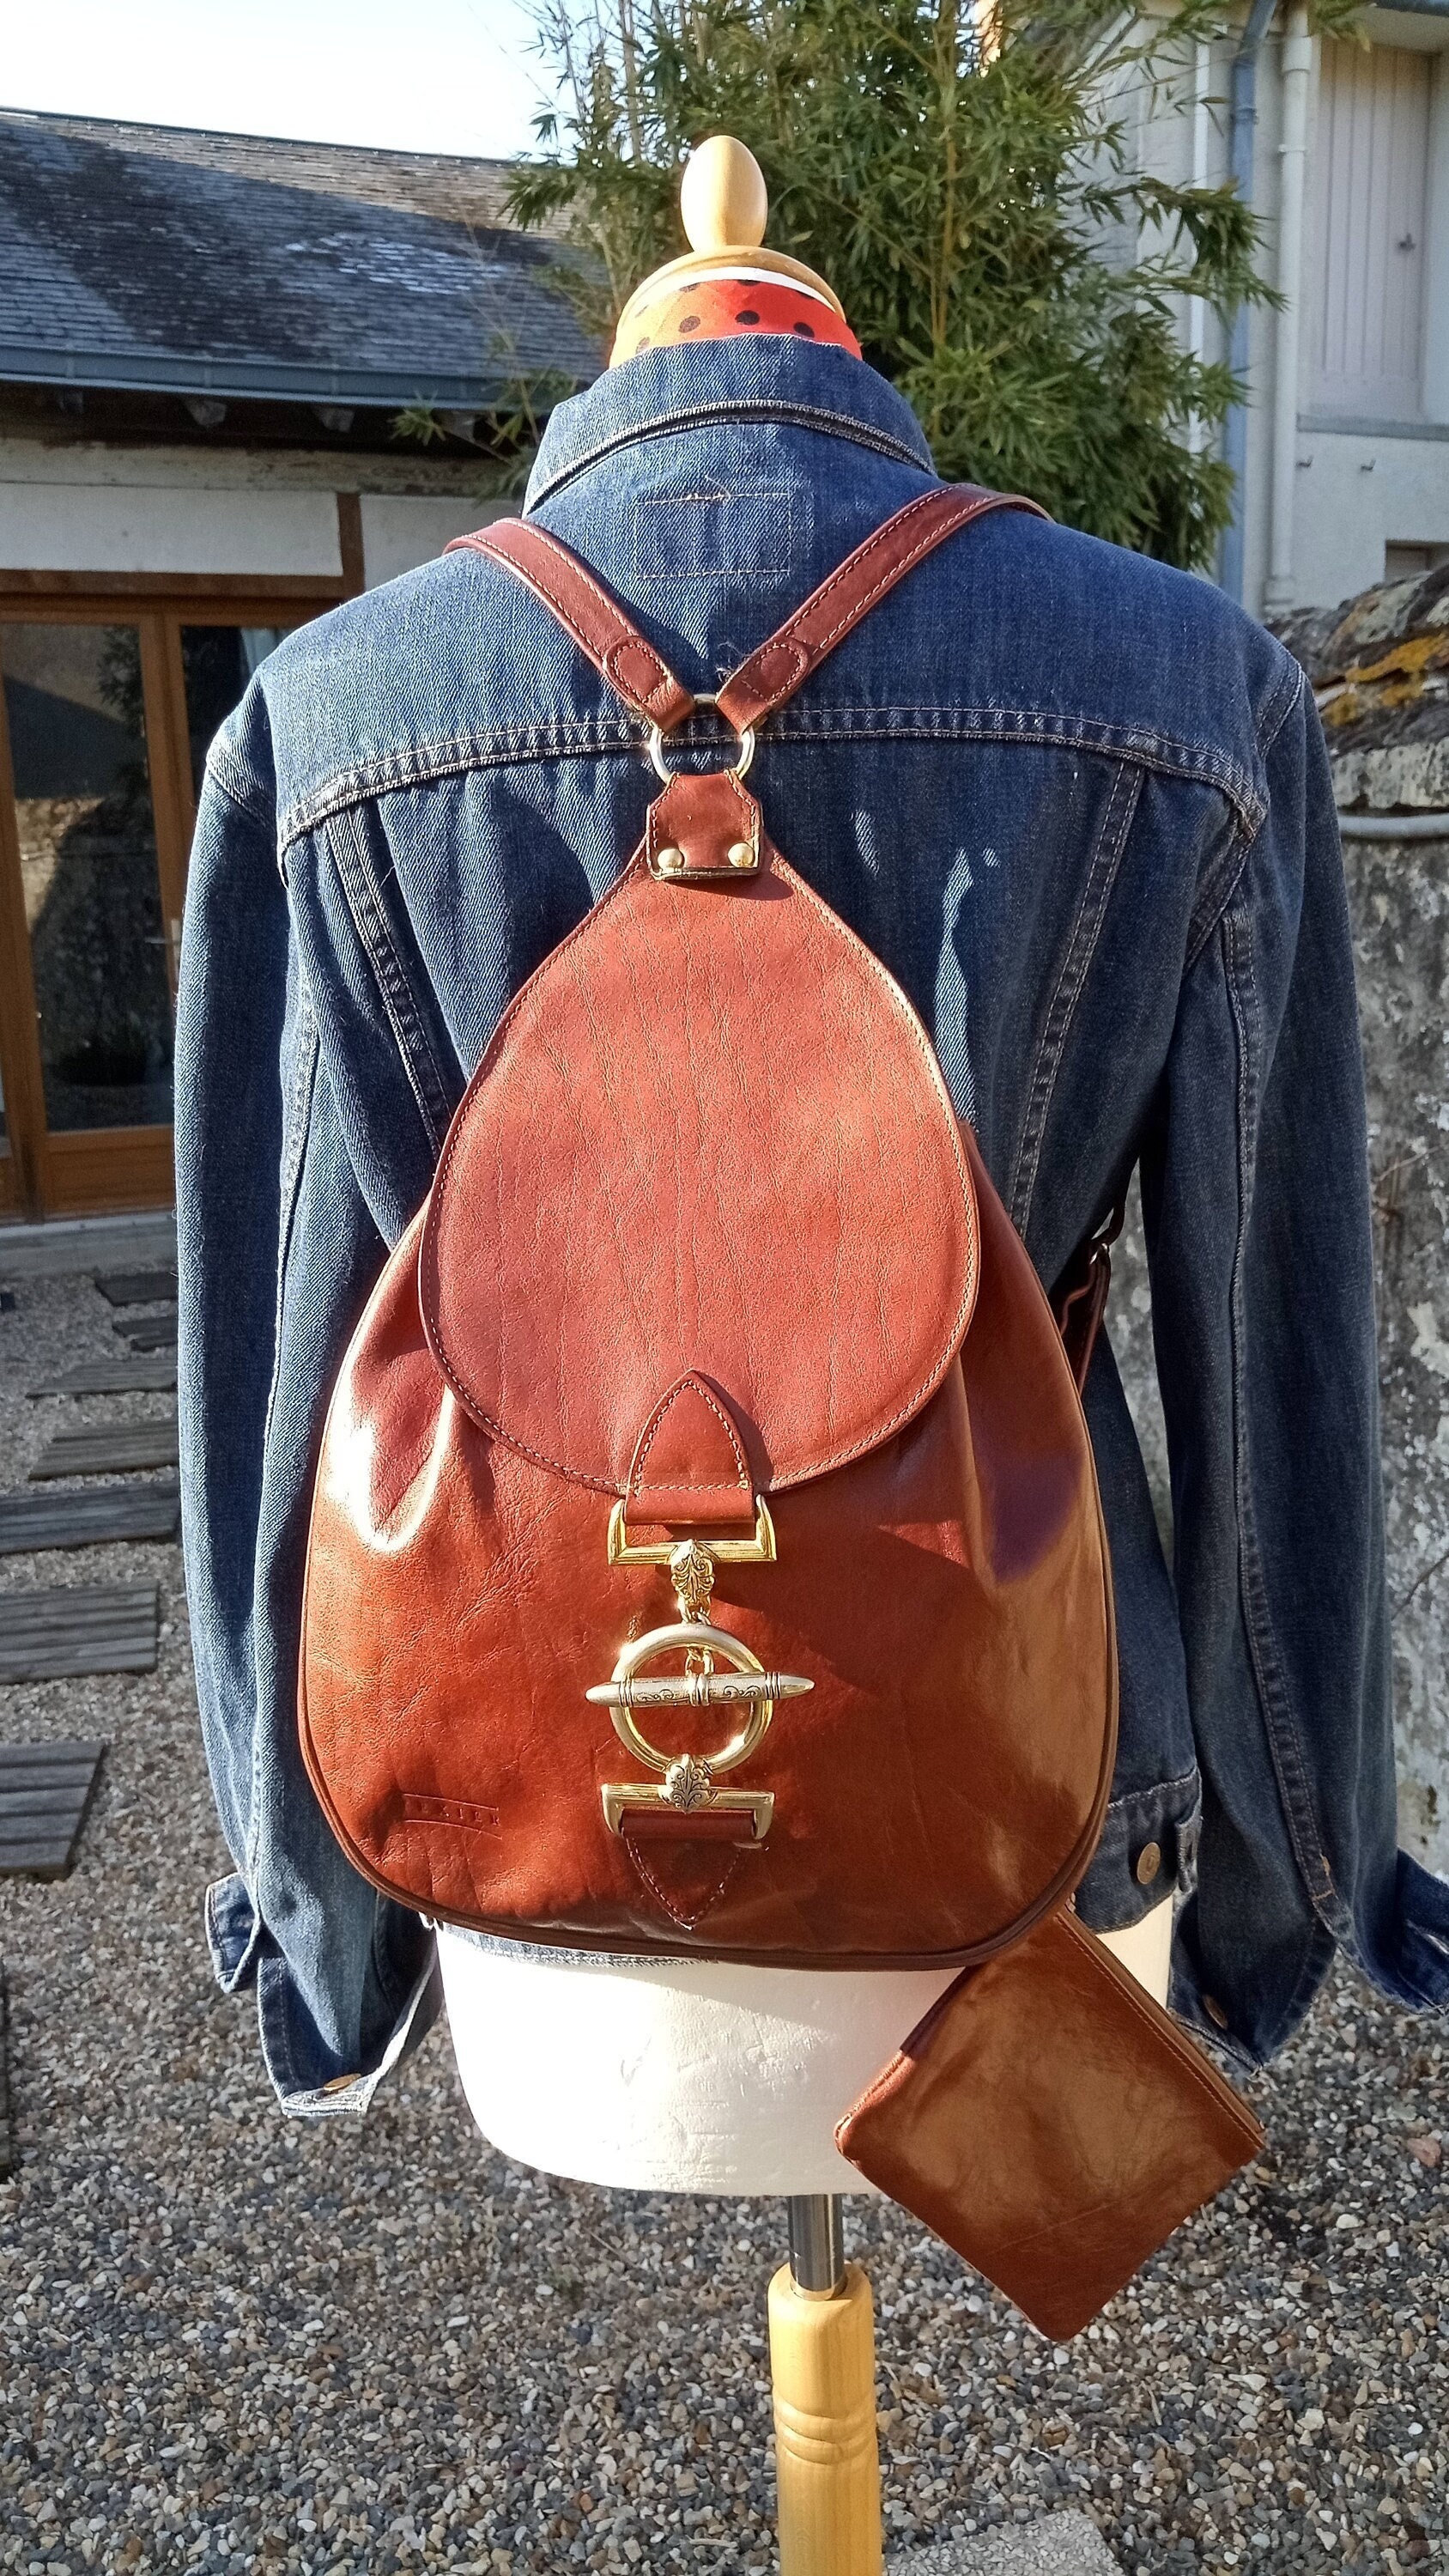 TEXIER Brown Leather Shoulder Bag Excellent - Made in France